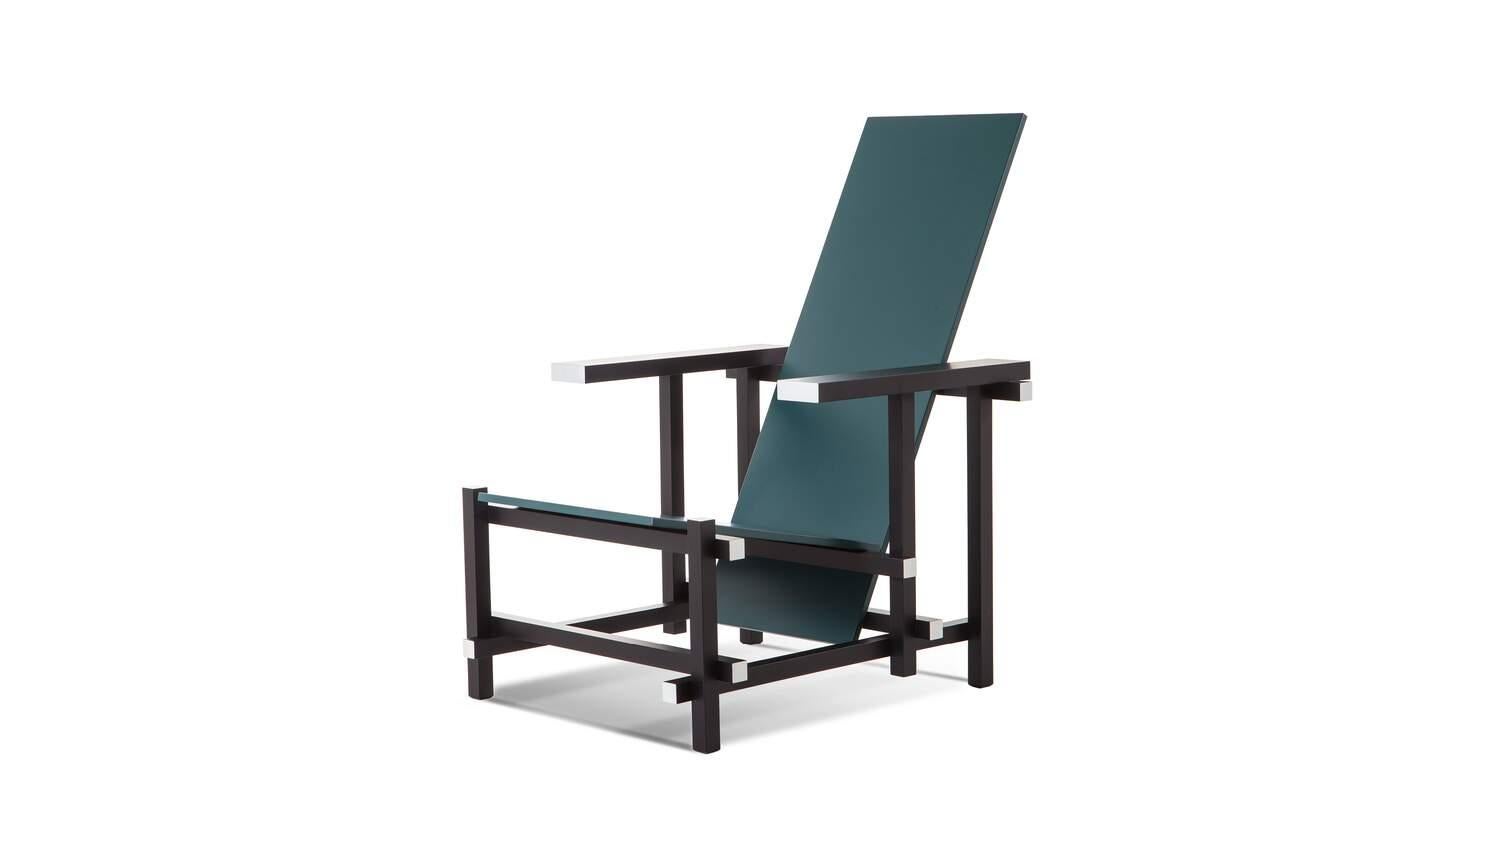 Chaise conçue par Gerrit Rietveld en 1920. Relancé en 2015.
Fabriqué par Cassina en Italie.

L'une des versions du modèle emblématique datant de 1918. La structure est en bois de hêtre teinté noir avec des parties contrastées en blanc. Assise et